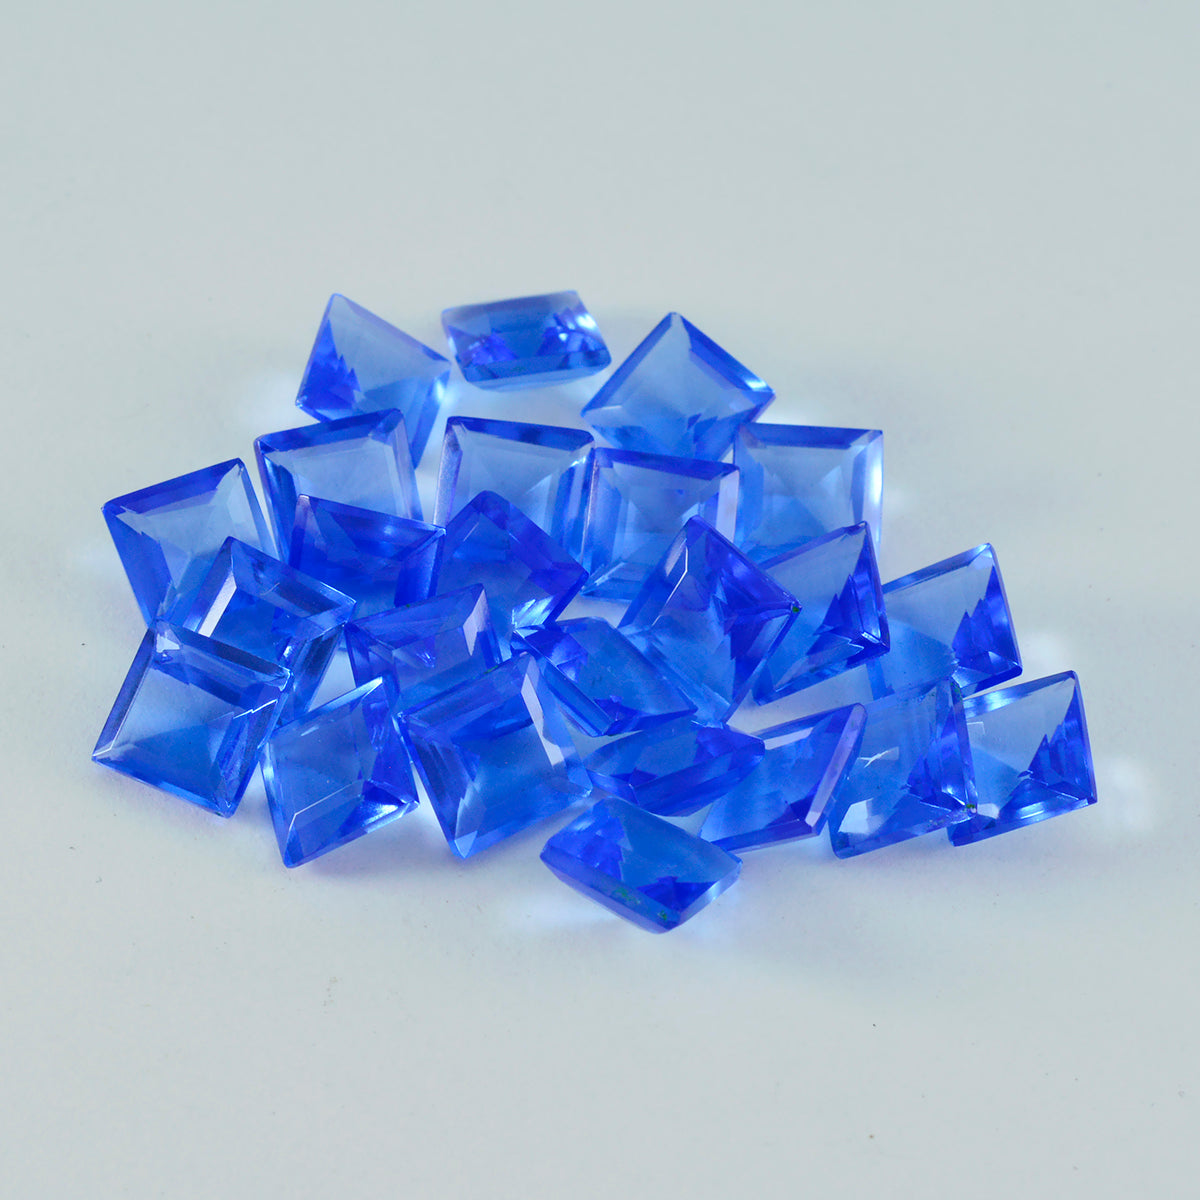 riyogems 1 шт. синий сапфир cz ограненный 8x8 мм квадратной формы камень привлекательного качества